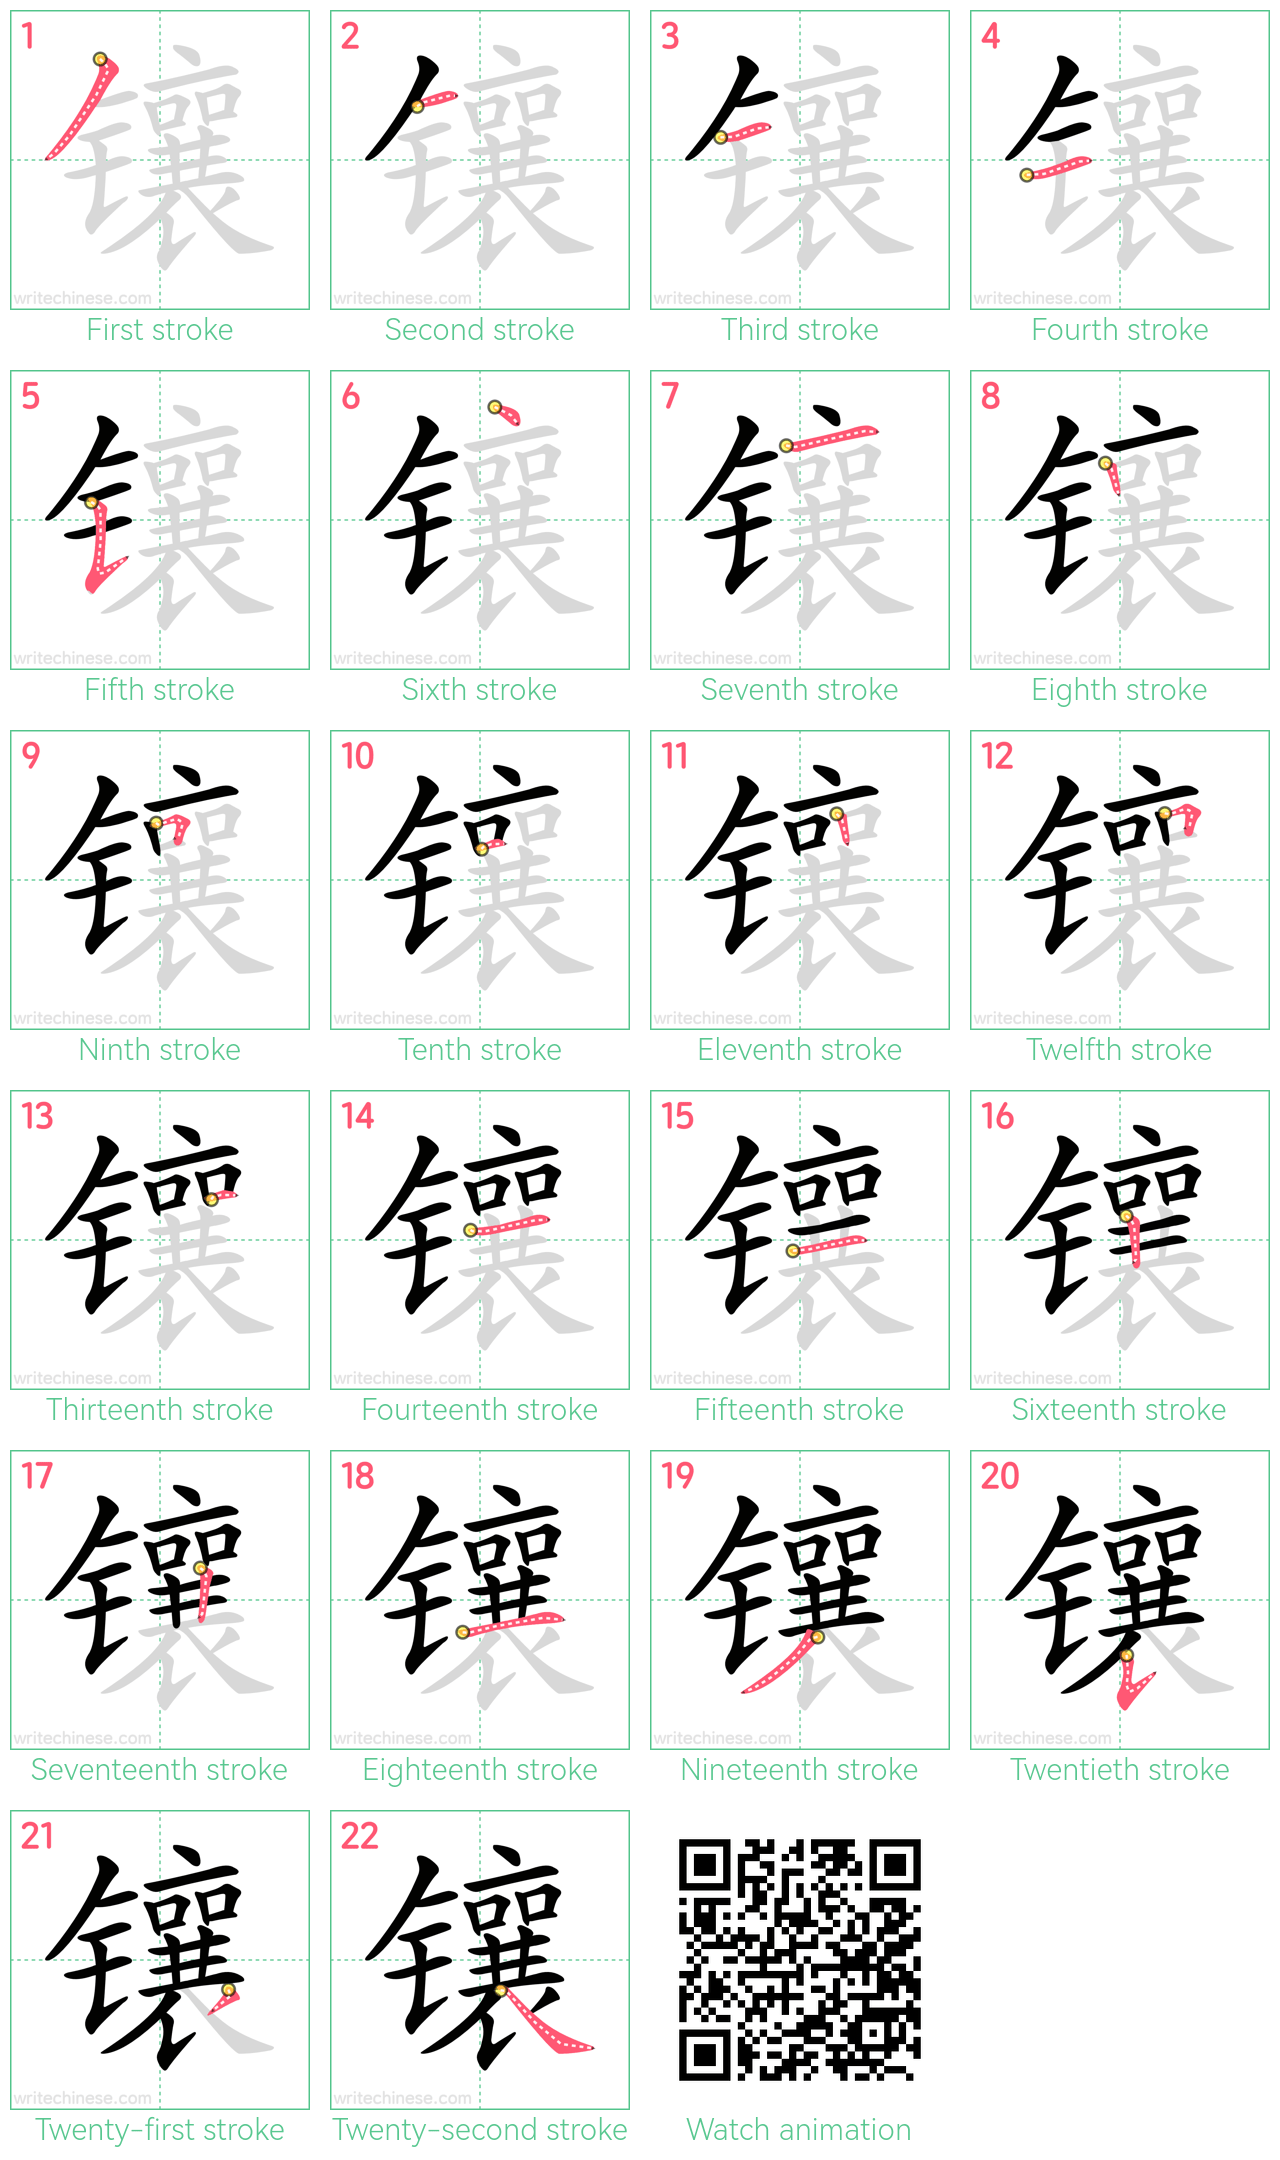 镶 step-by-step stroke order diagrams